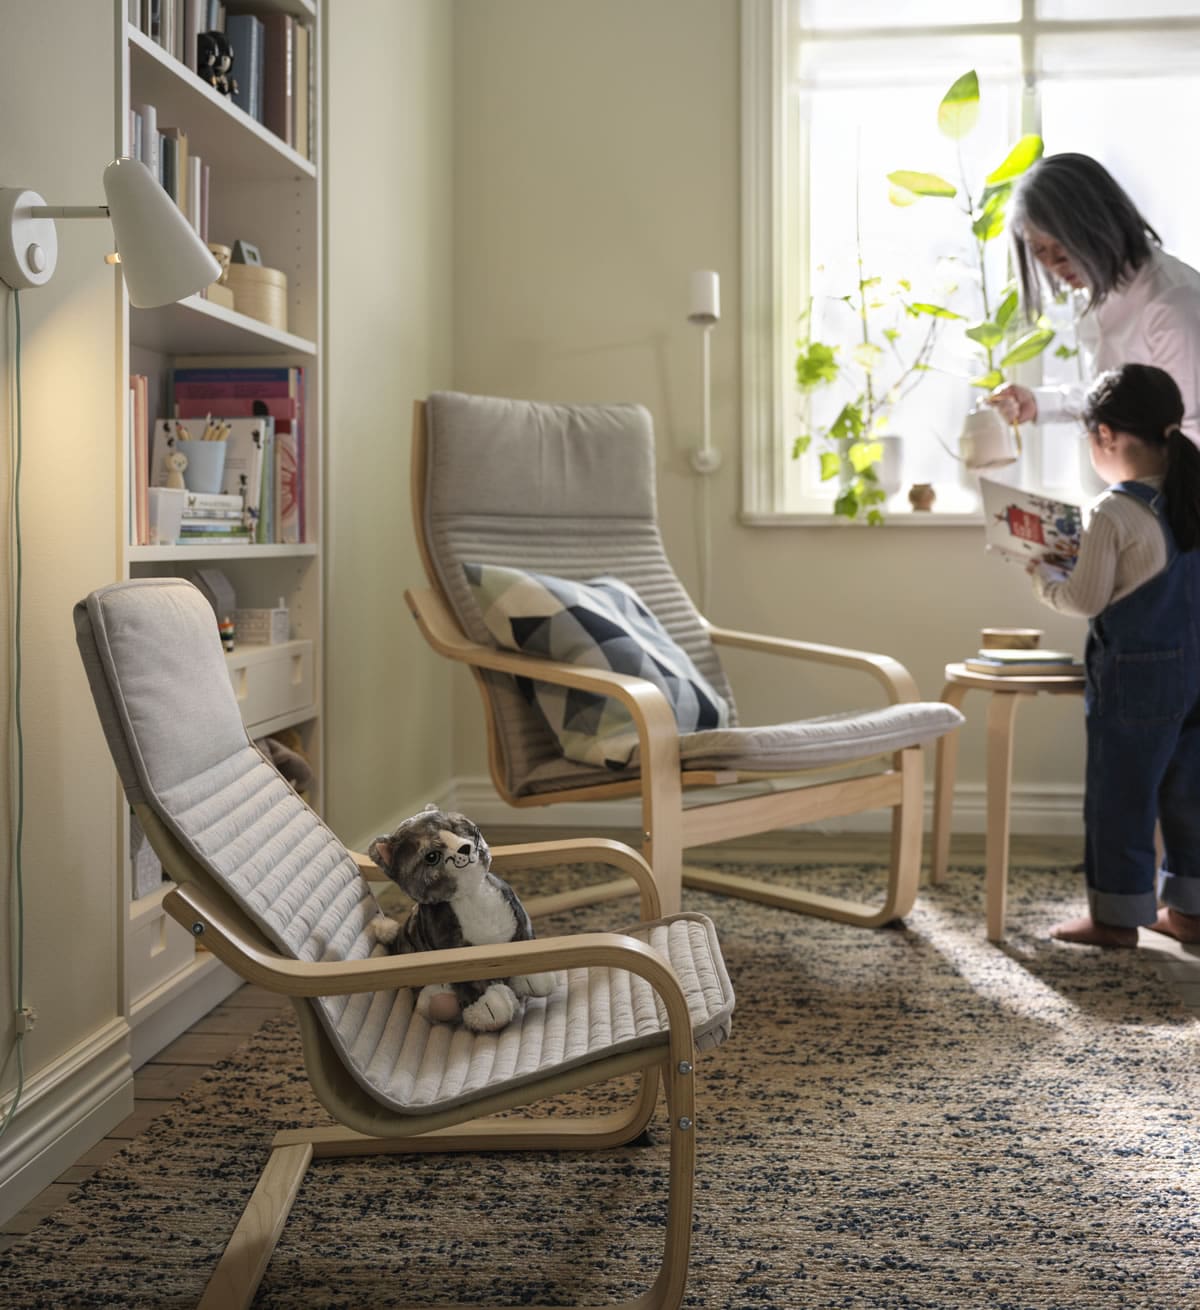 Ideas - Home 3 - Her yaşa uygun oturma odası çözümleri